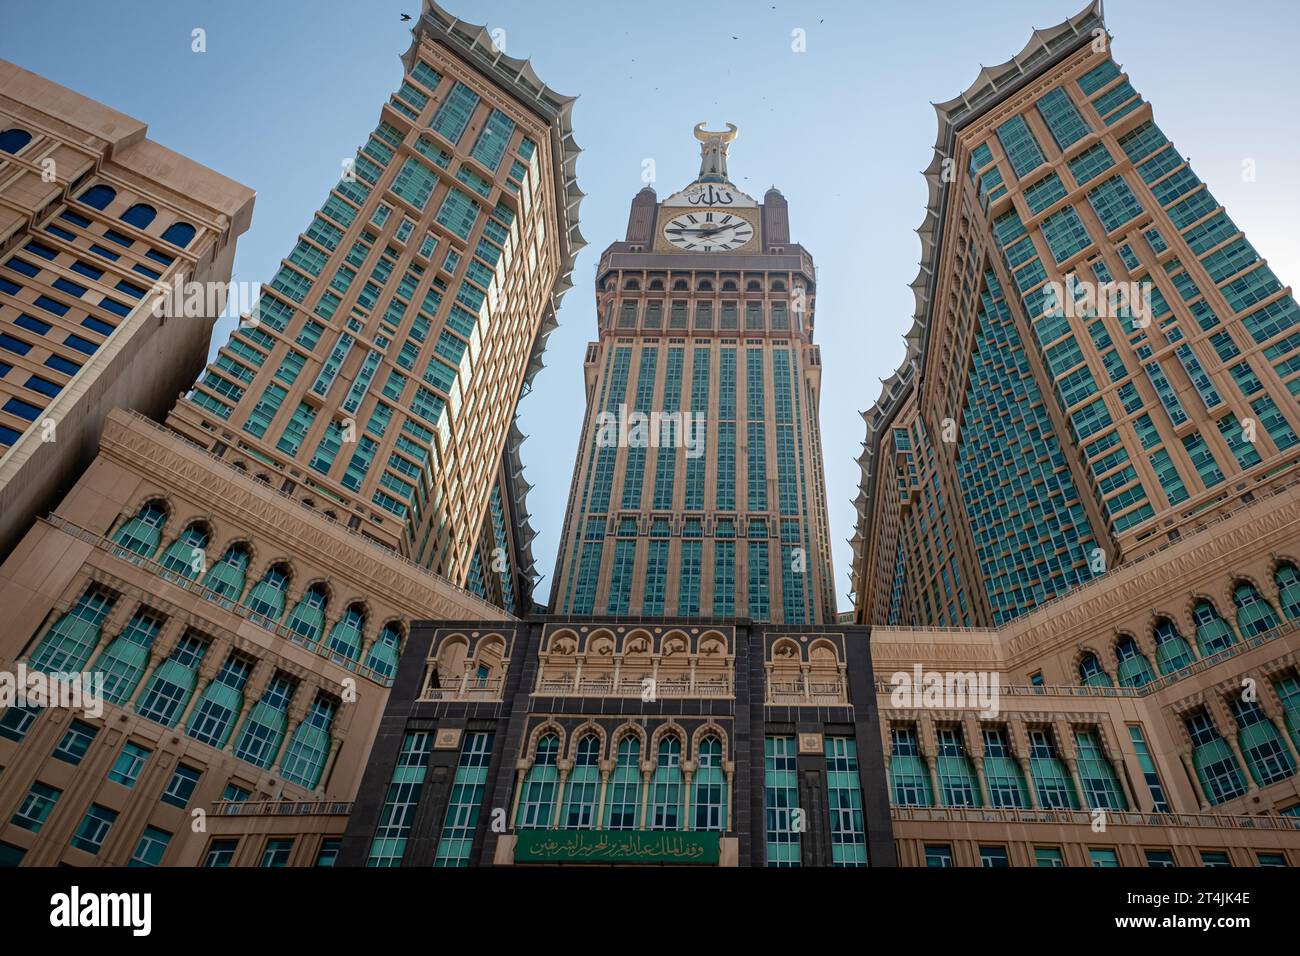 The Clock Tower, Makkah, Saudi Arabia Stock Photo